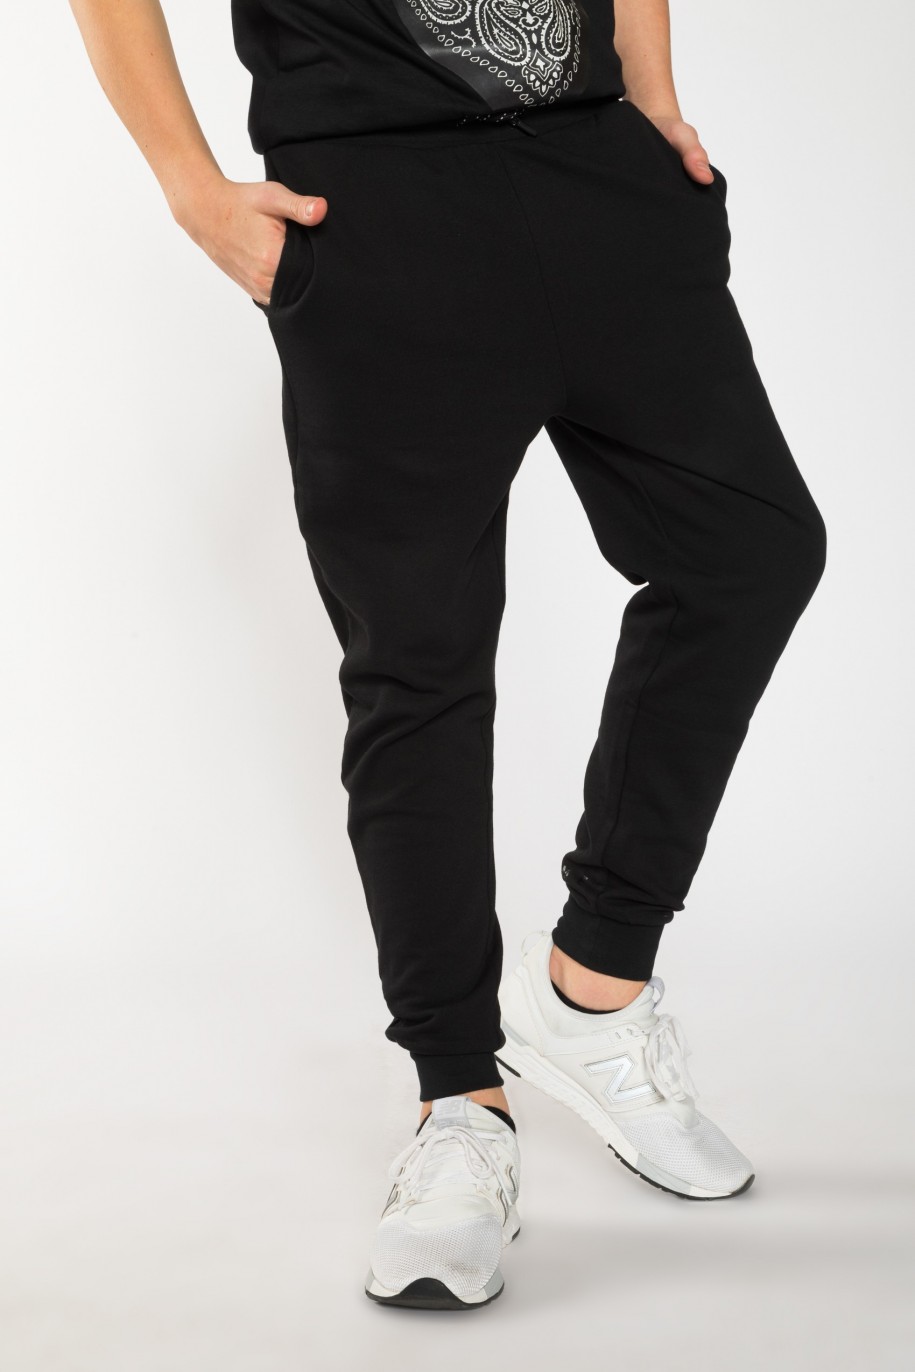 Czarne spodnie dresowe dla chłopaka z nadrukami z tyłu nogawek - 25533